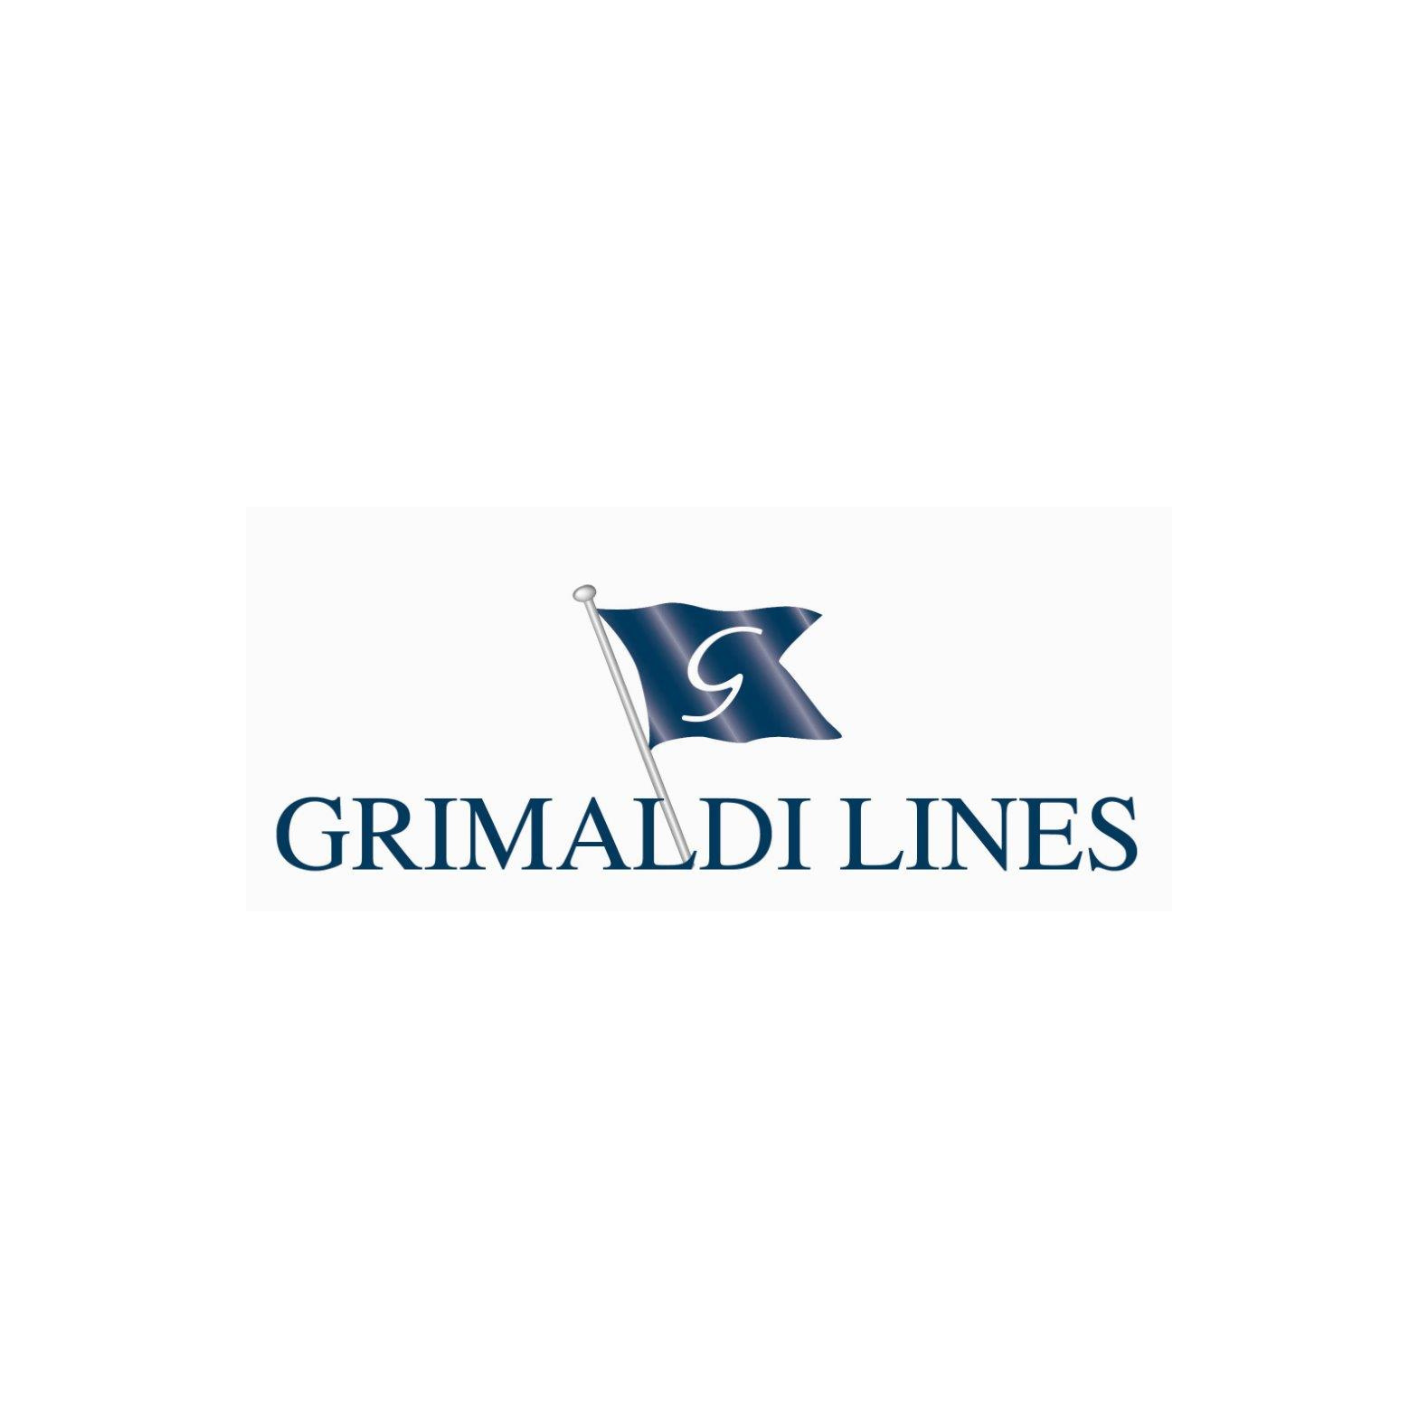 Grimaldi-lignes-logo